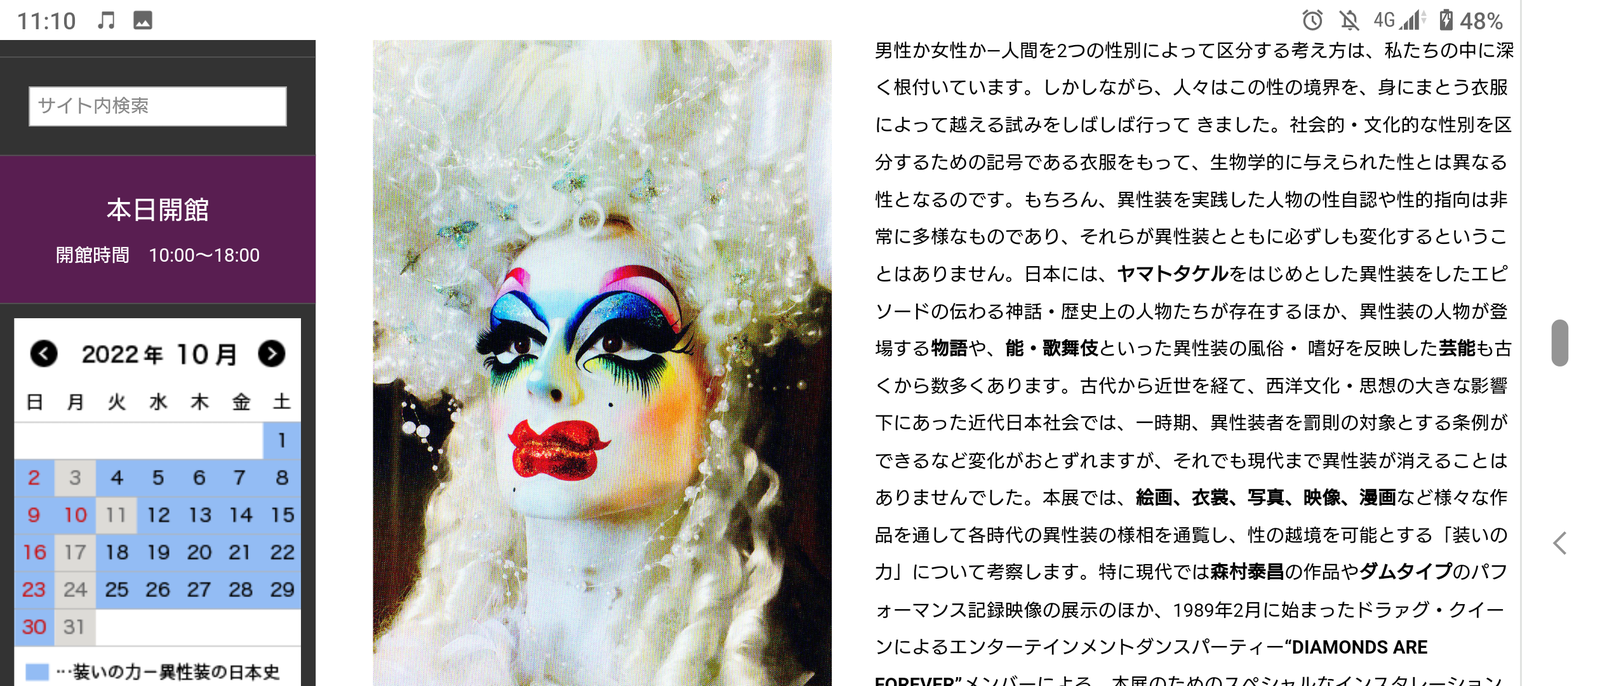 🎨『装いの力―異性装の日本史』を語る🎨